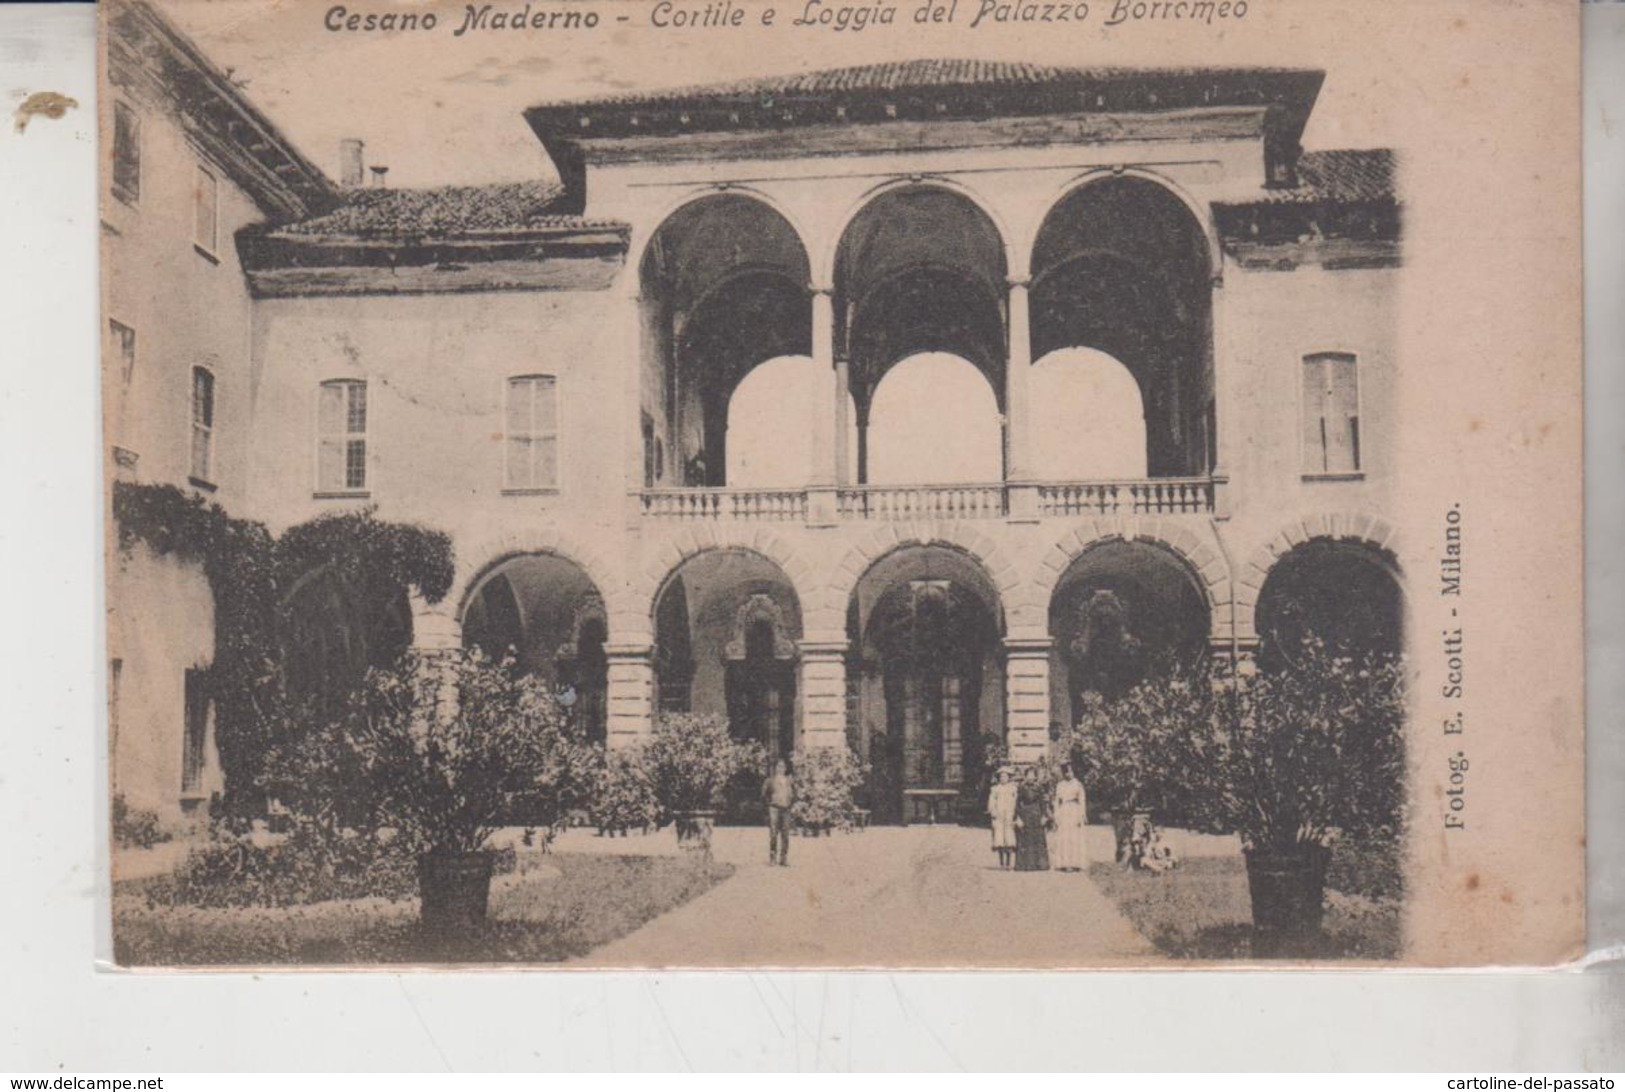 CESANO MADERNO MONZA BRIANZA PALAZZO BORROMEO ANIMATA 1909 - Monza